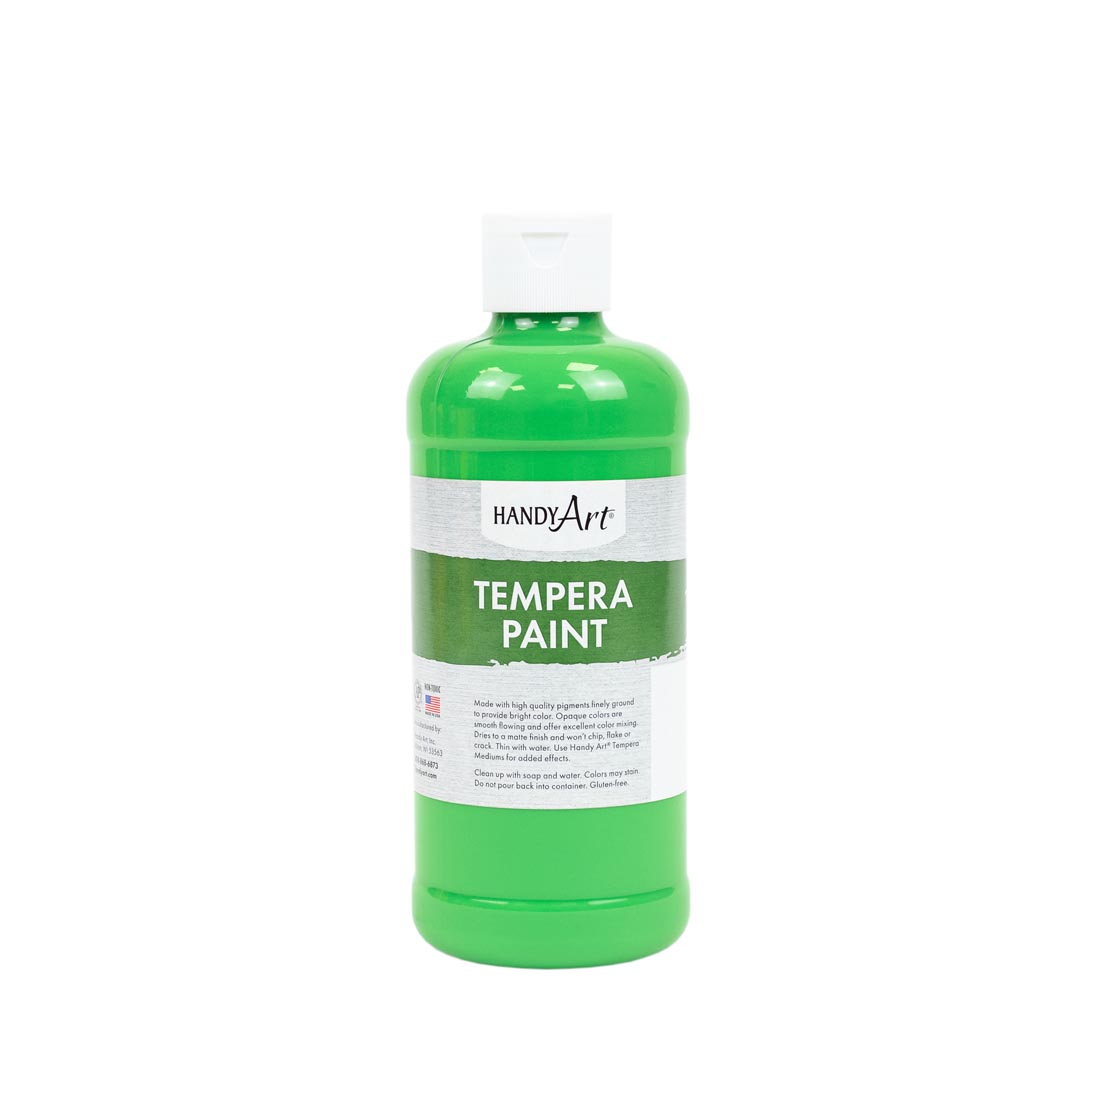 Pint Bottle of Fluorescent Green Handy Art Tempera Paint